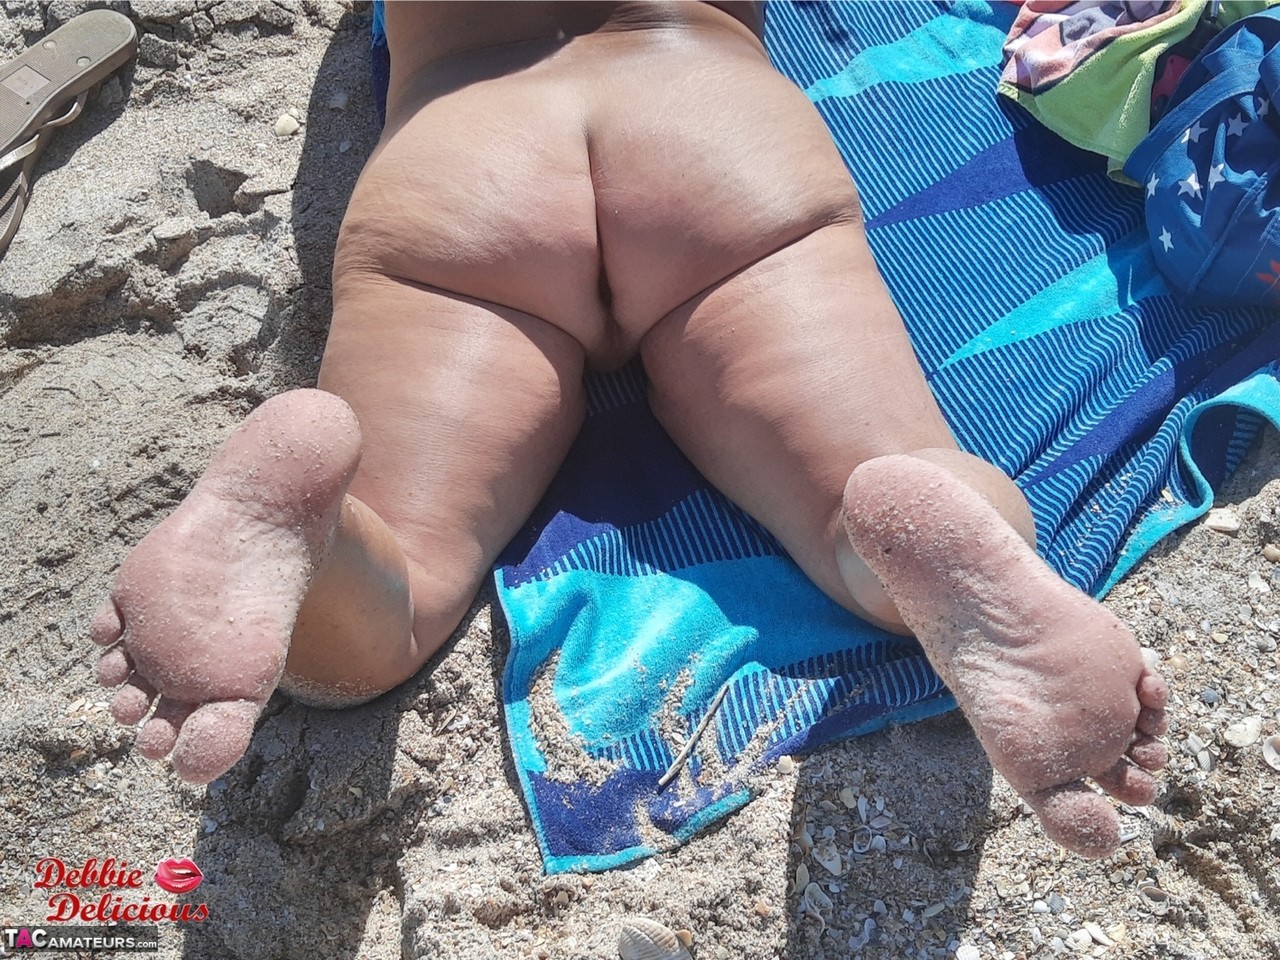 Older amateur Debbie Delicious sunbathes in shades on a nude beach foto porno #426813788